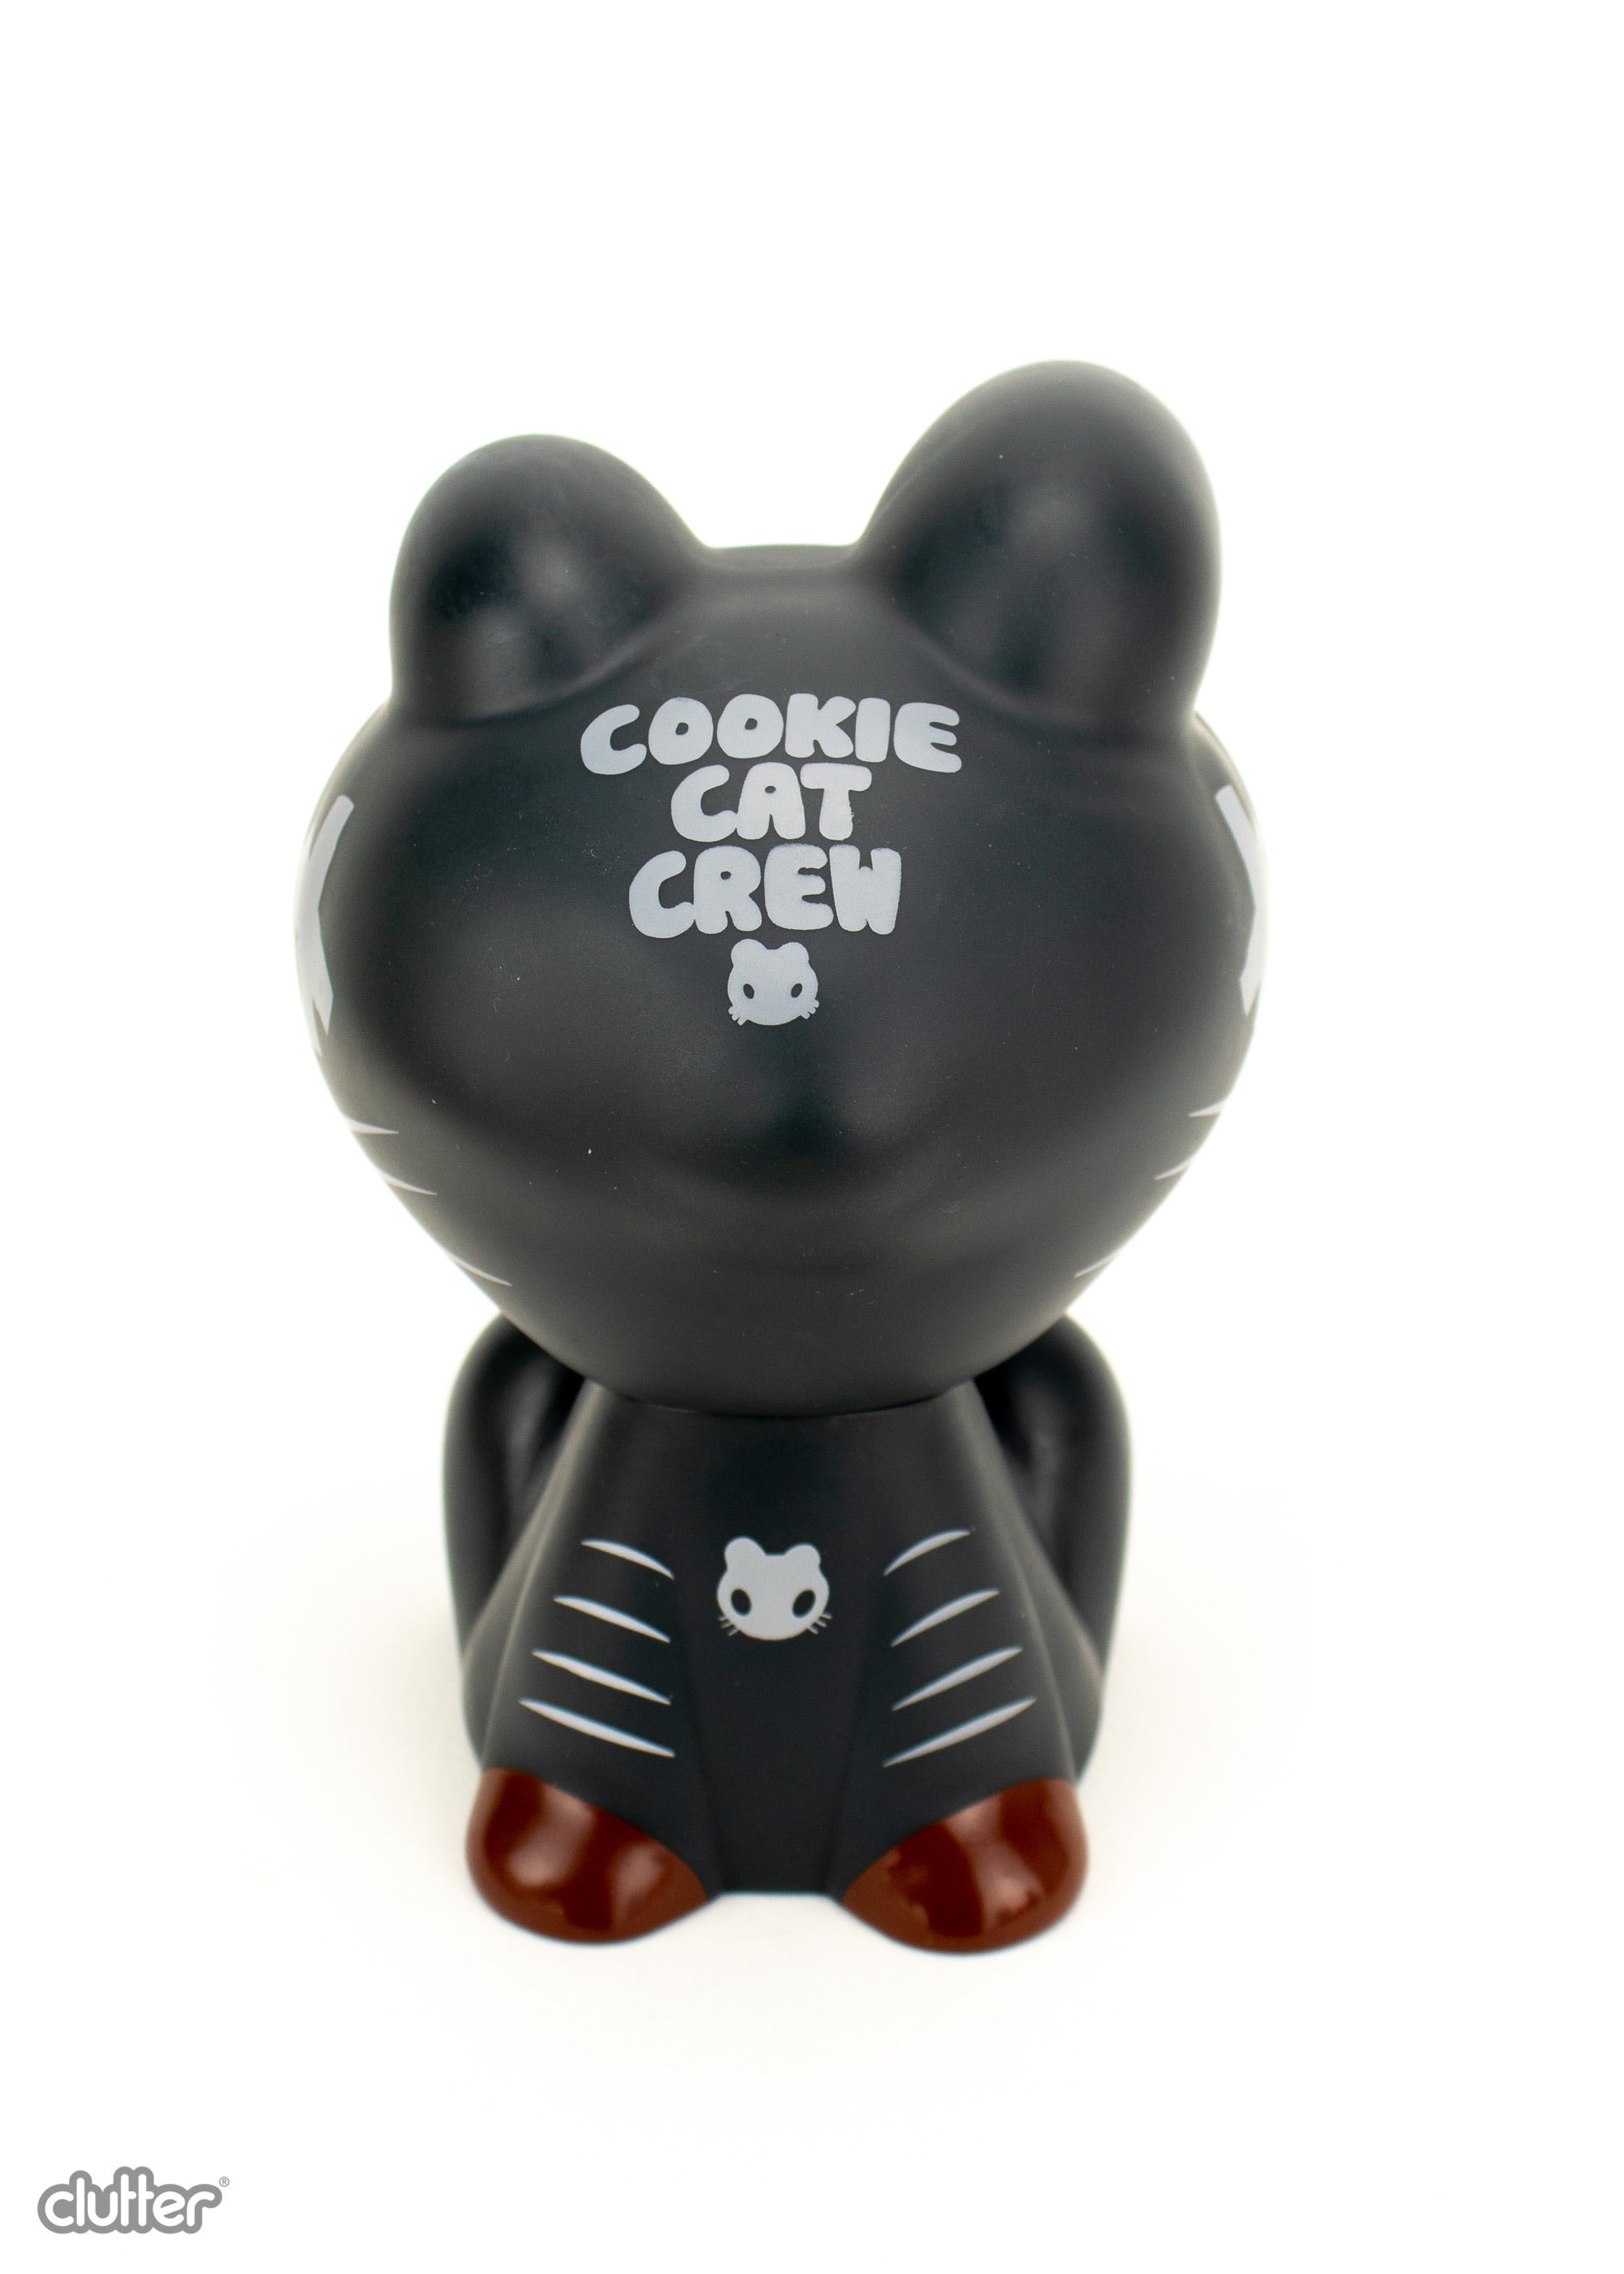 Cookie Cat Crew - Night Hawk Strangecat Exclusive! by Czee13